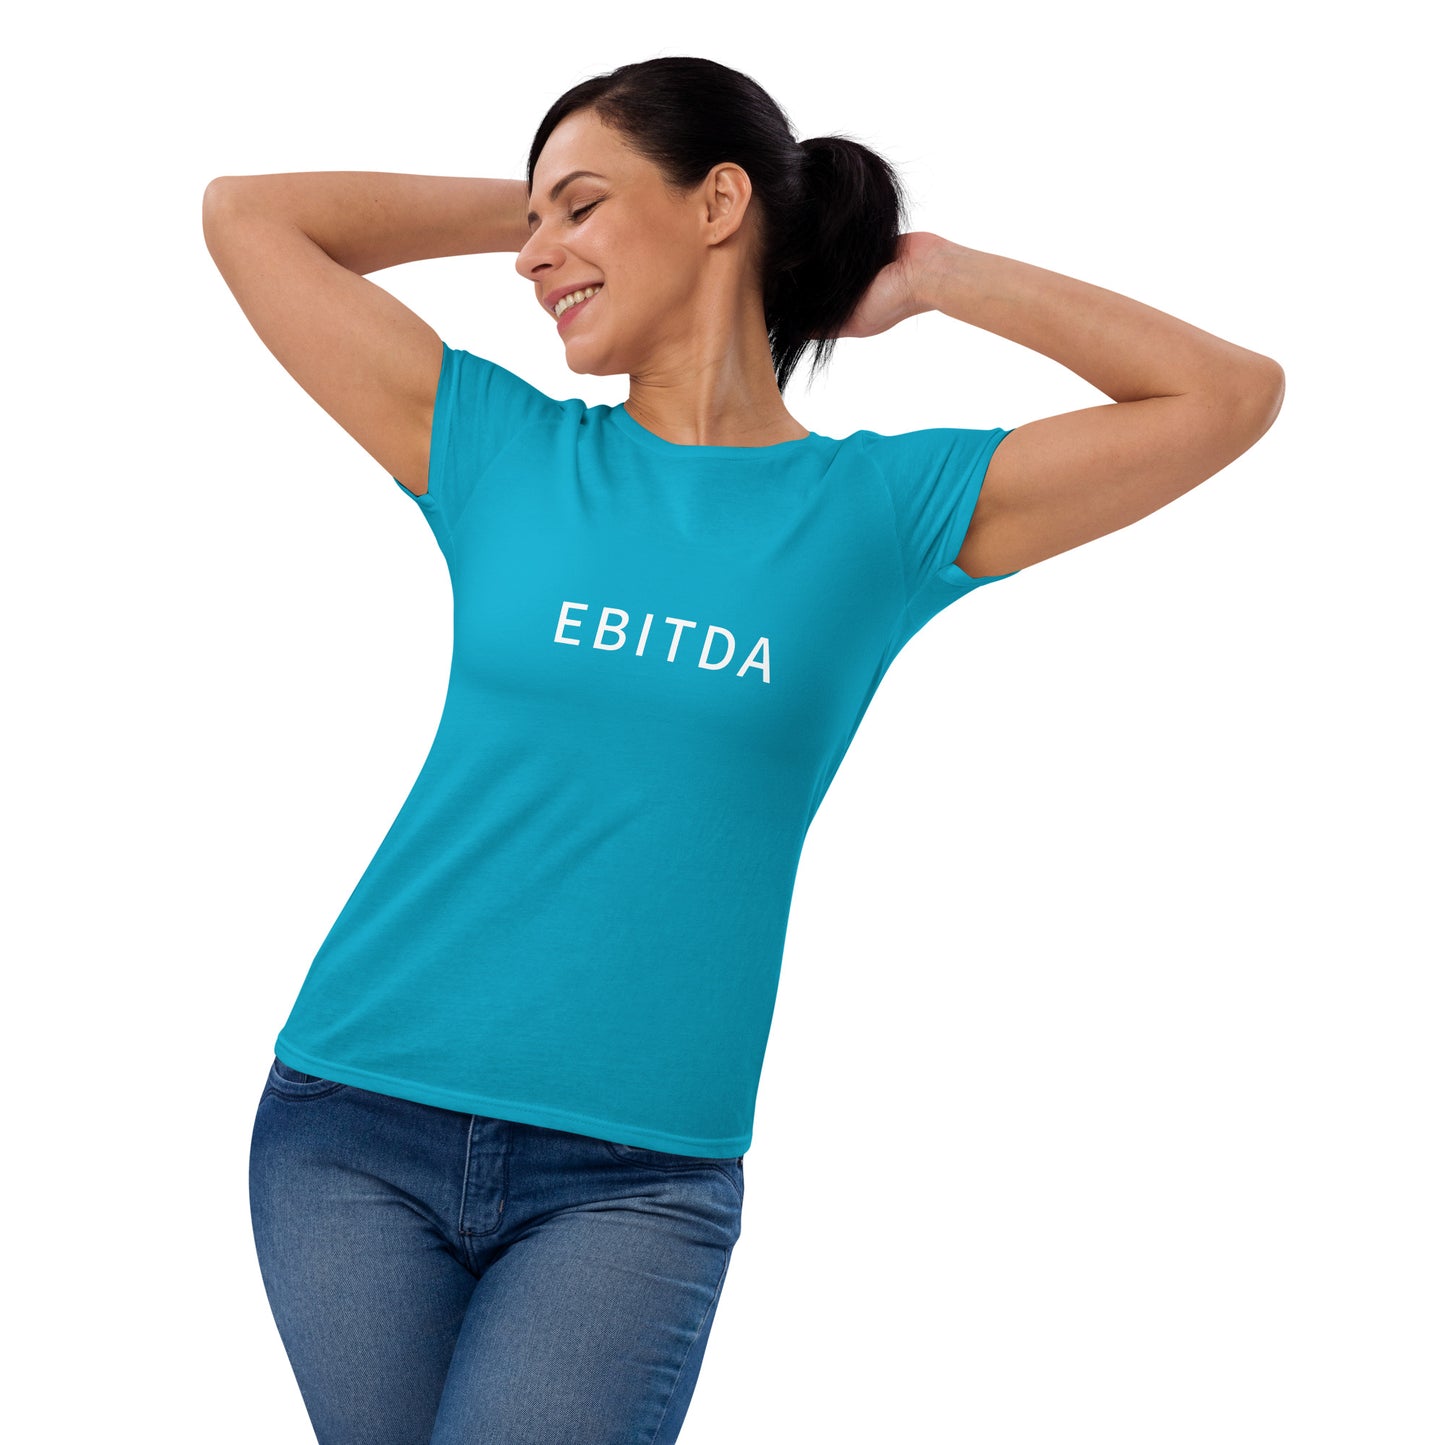 EBITDA - Women's Fashion Fit T-Shirt - Gildan 880